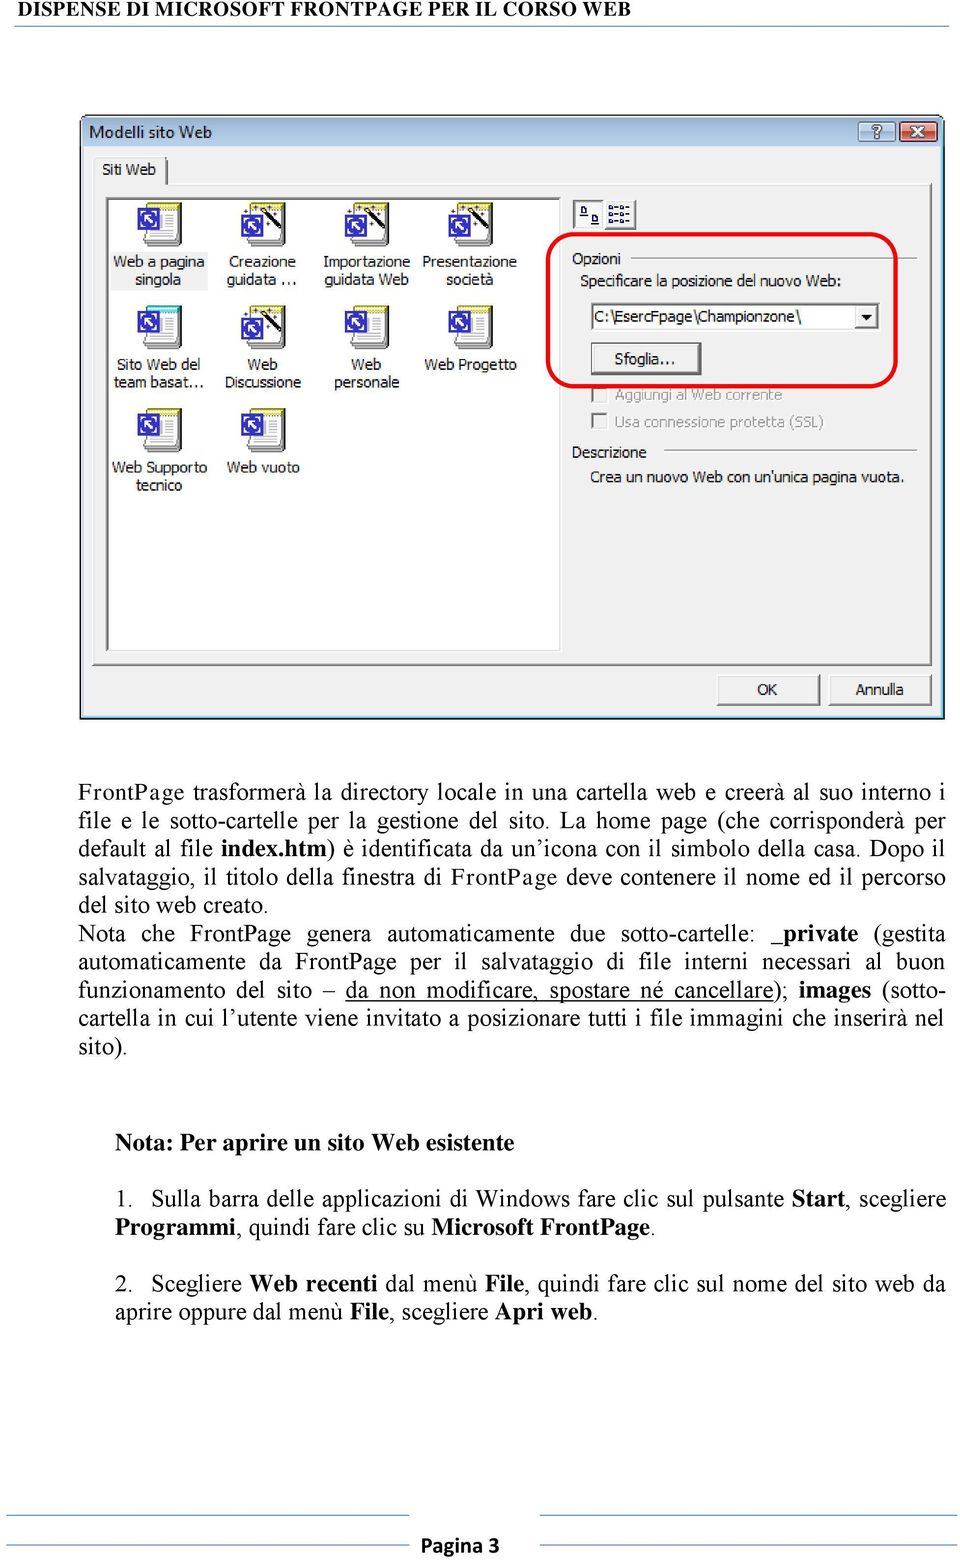 Nota che FrontPage genera automaticamente due sotto-cartelle: _private (gestita automaticamente da FrontPage per il salvataggio di file interni necessari al buon funzionamento del sito da non